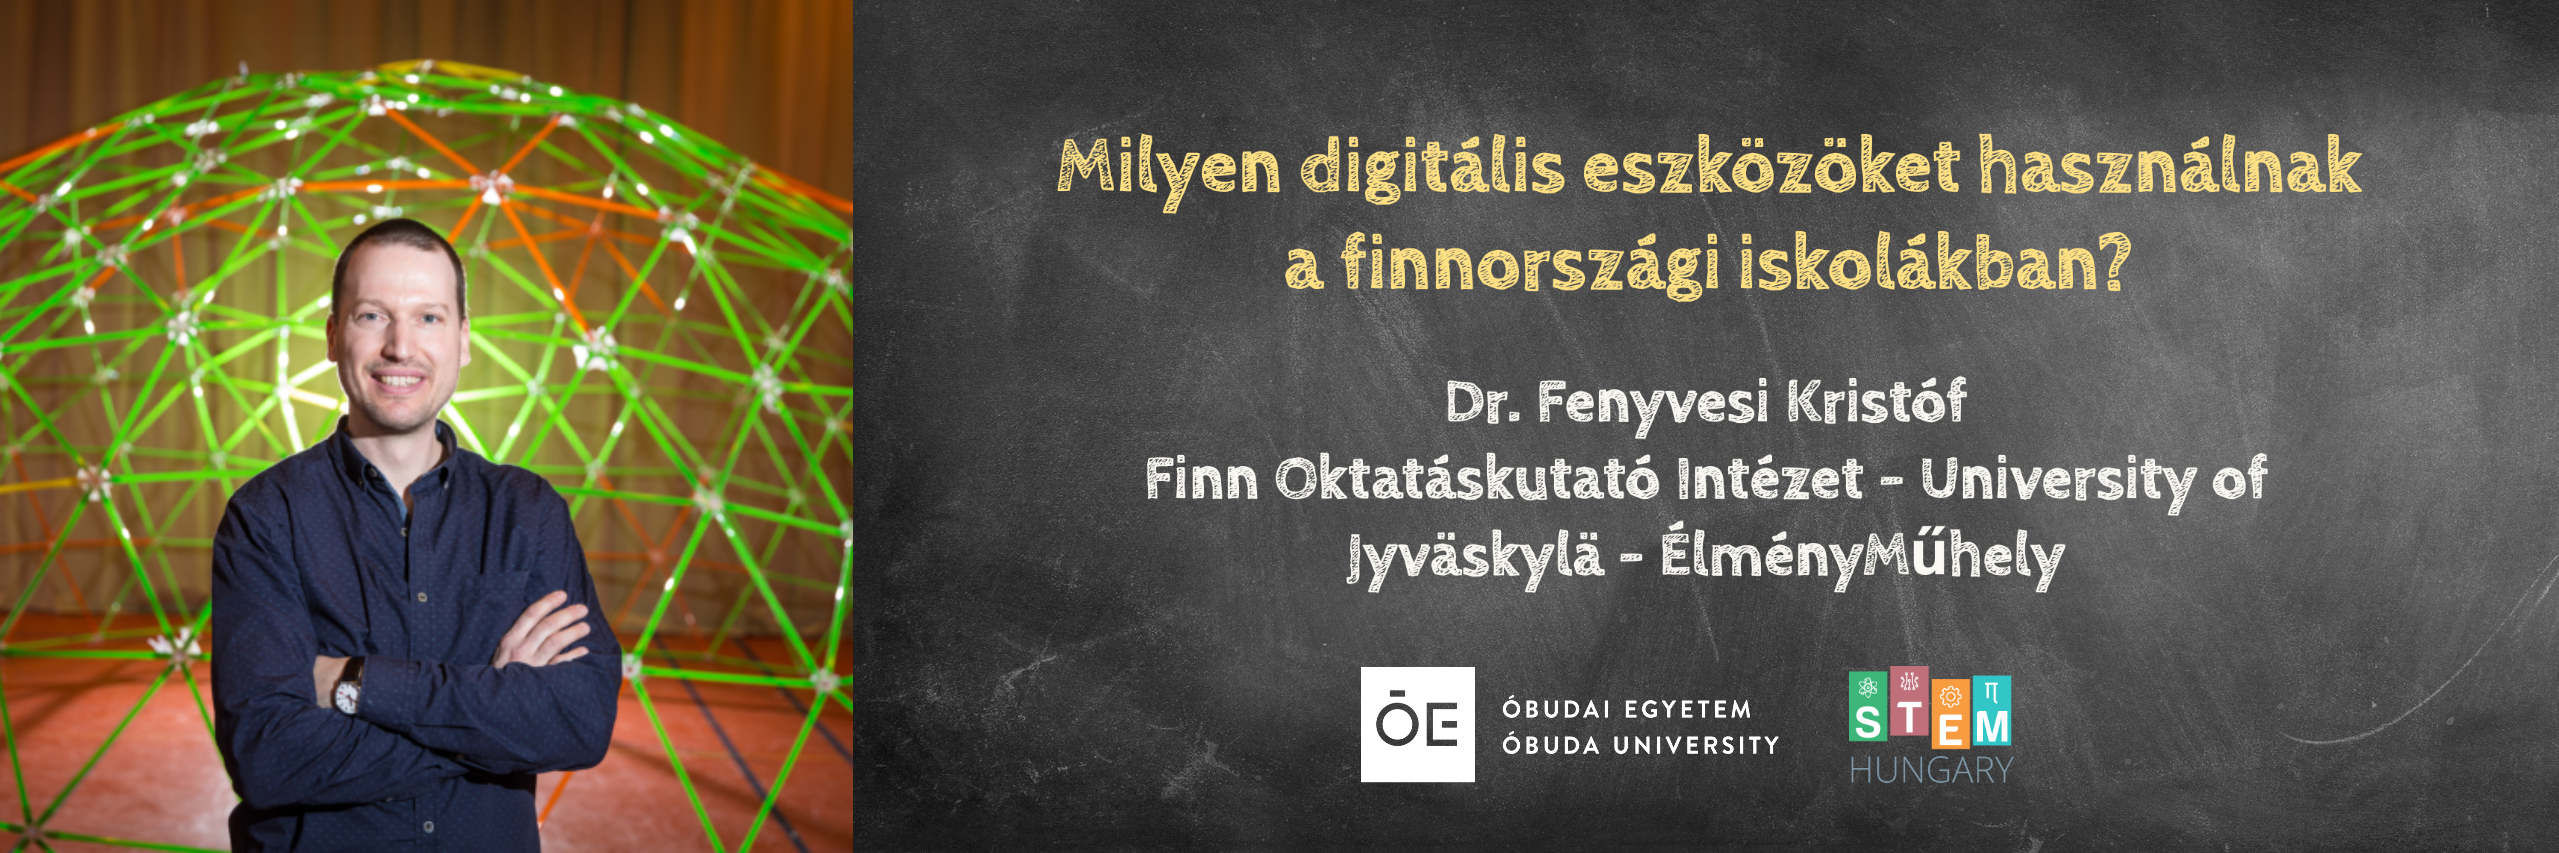 Milyen digitális eszközöket használnak a finnországi iskolákban?